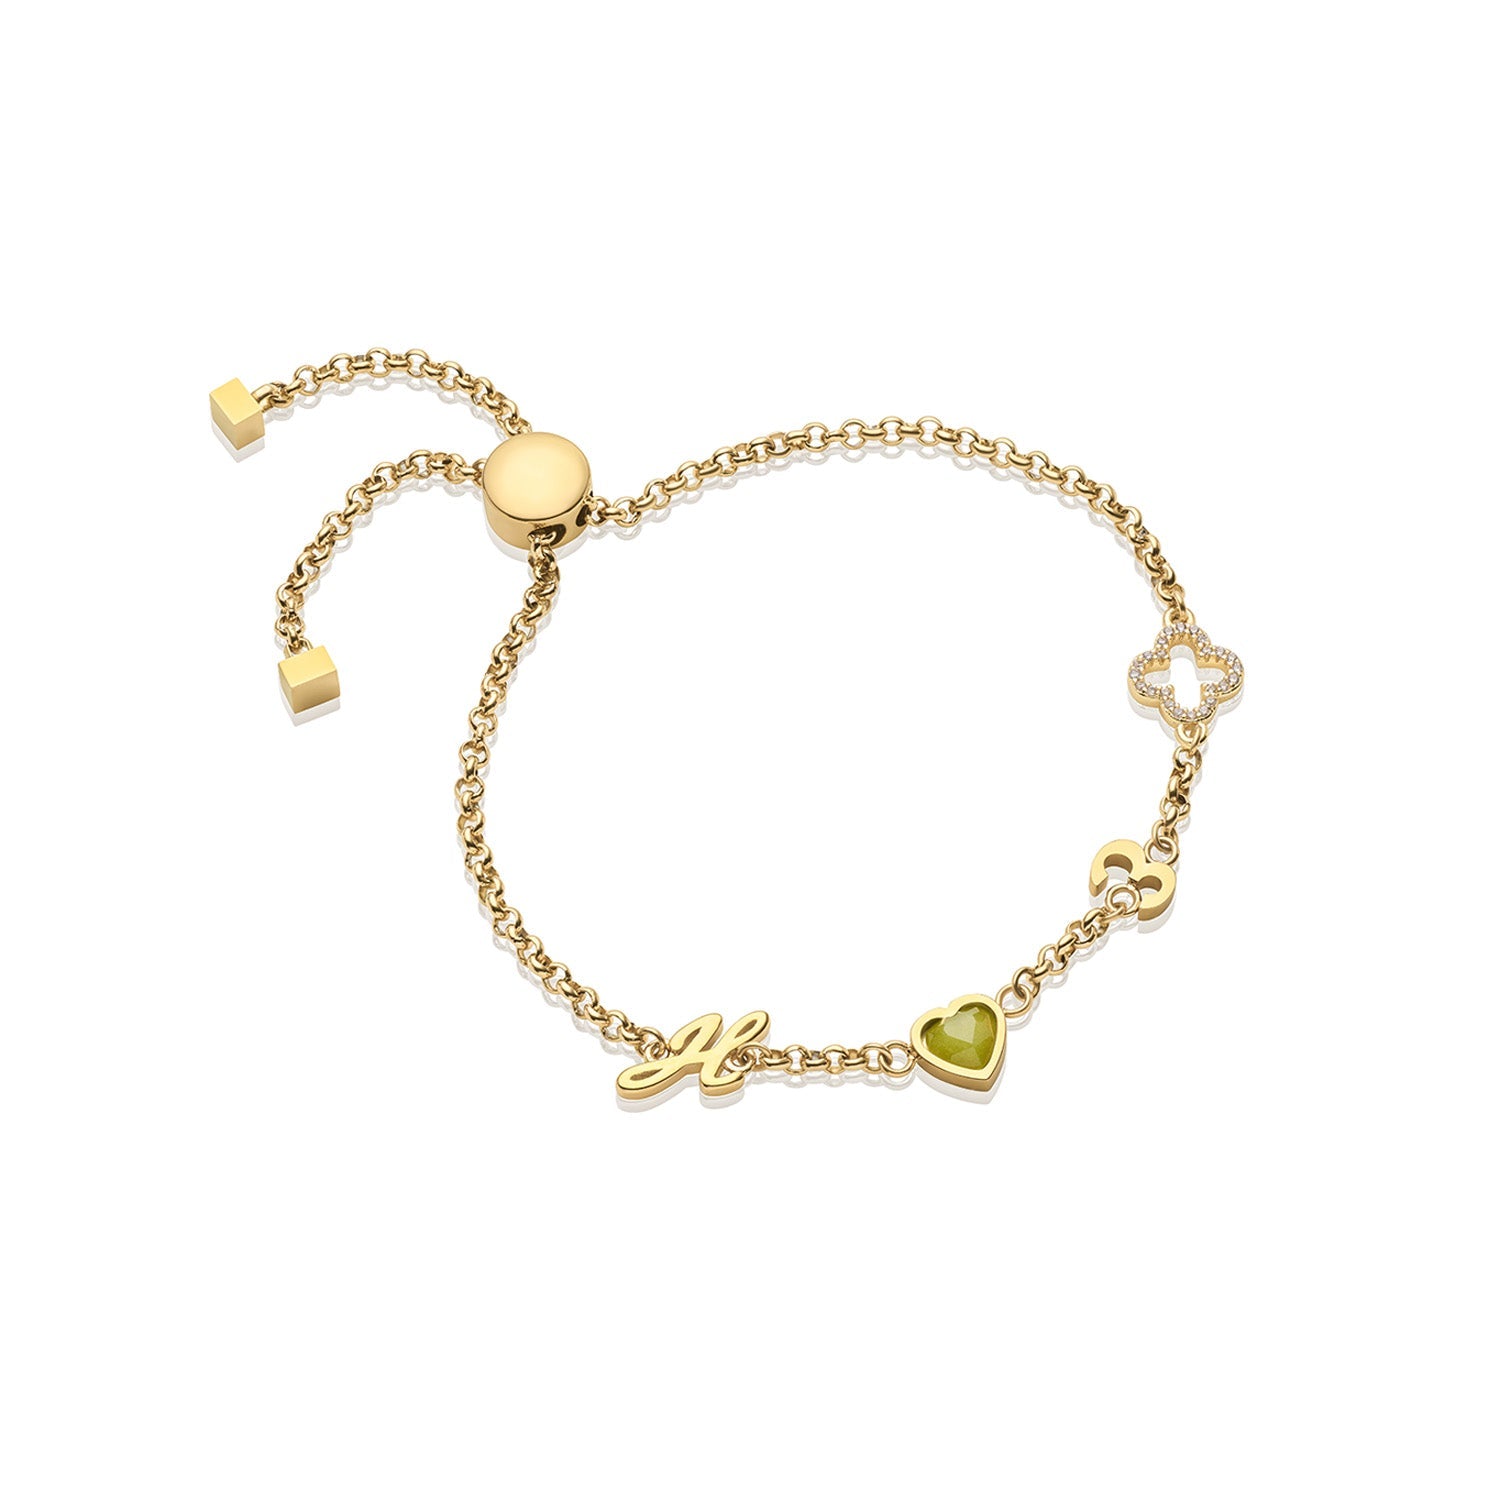 NEW Rose Gold Heart Bracelet Stainless Steel Chain Link | Gold heart  bracelet, Heart bracelet, Rose gold heart